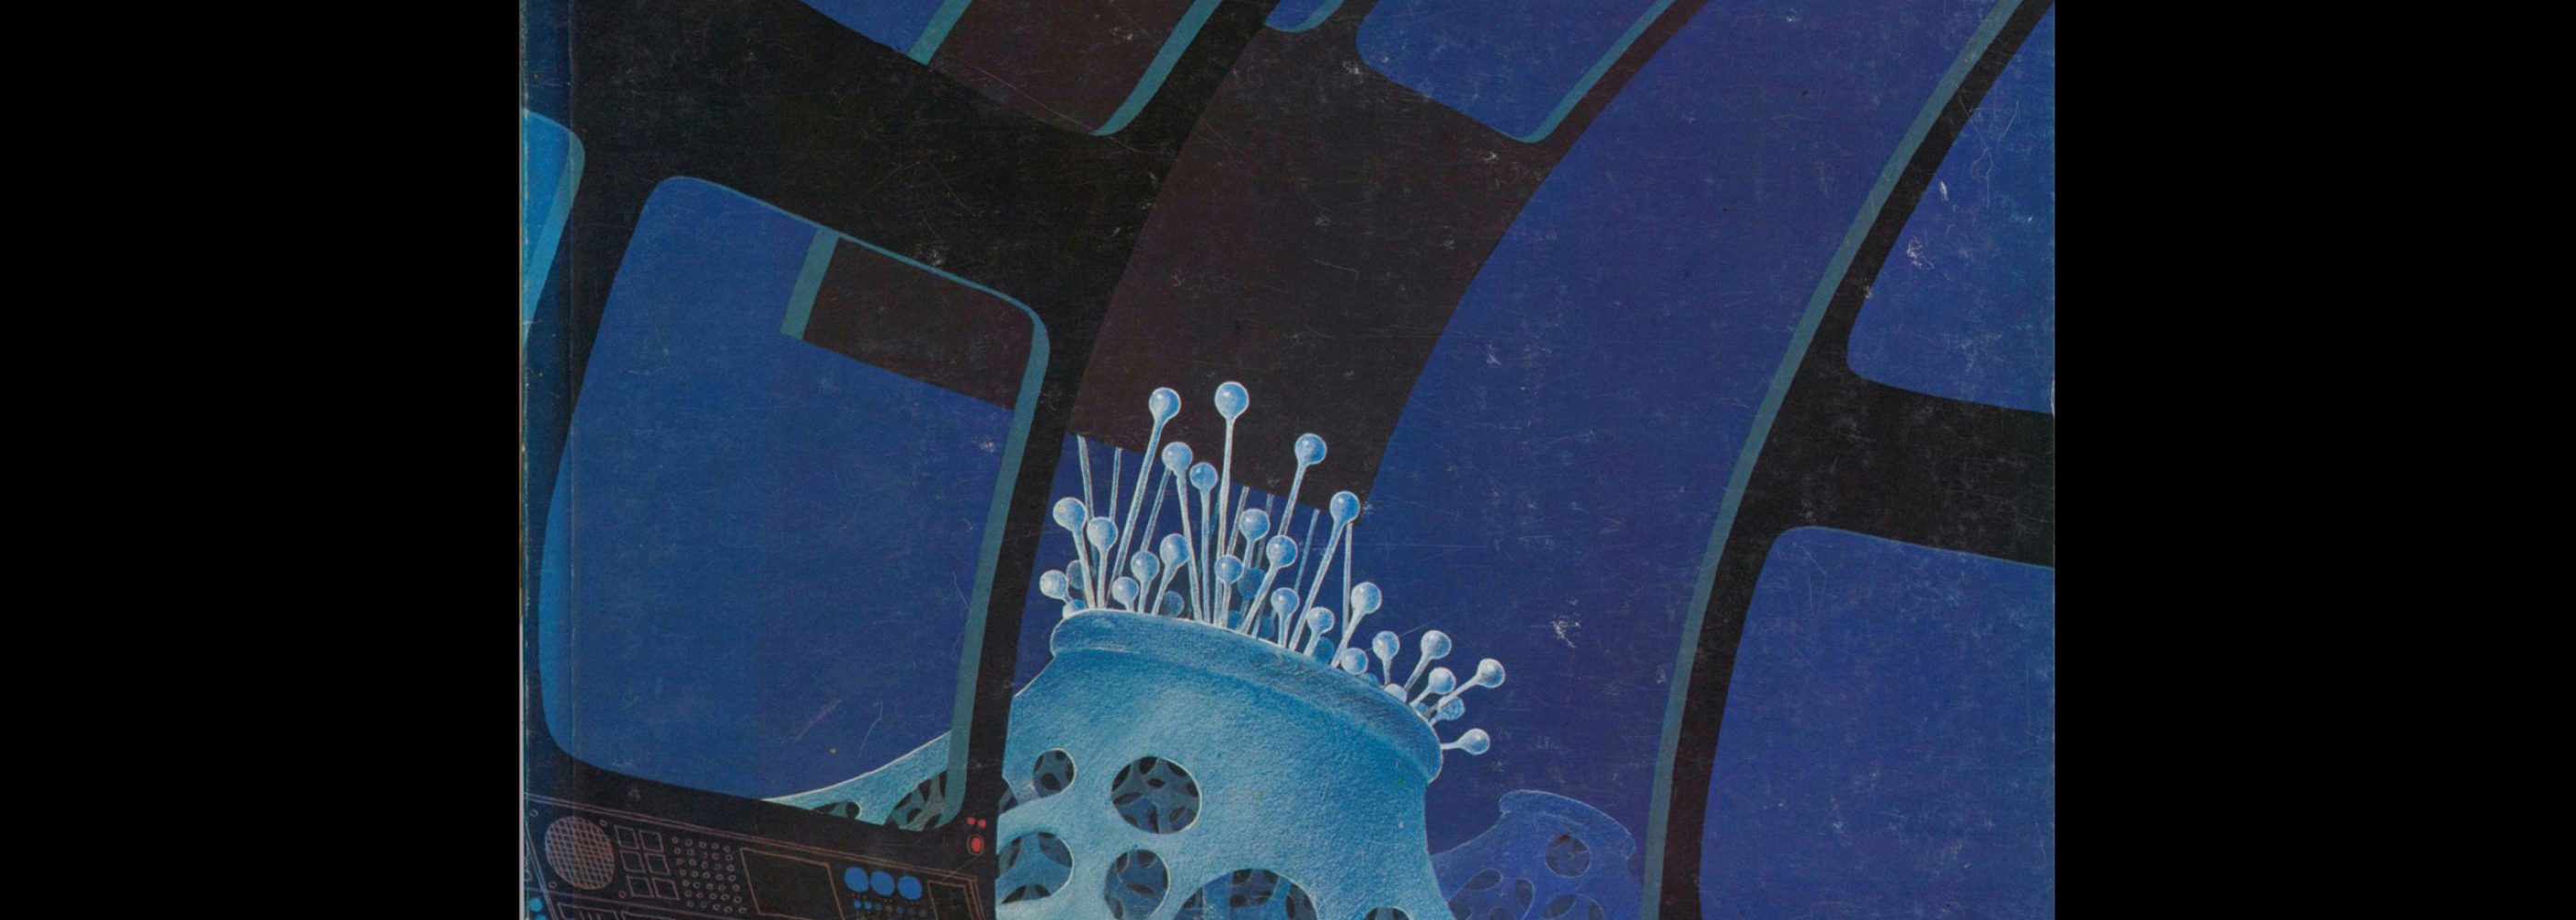 Novum Gebrauchsgraphik, 8, 1978. Cover design by Christian Josef